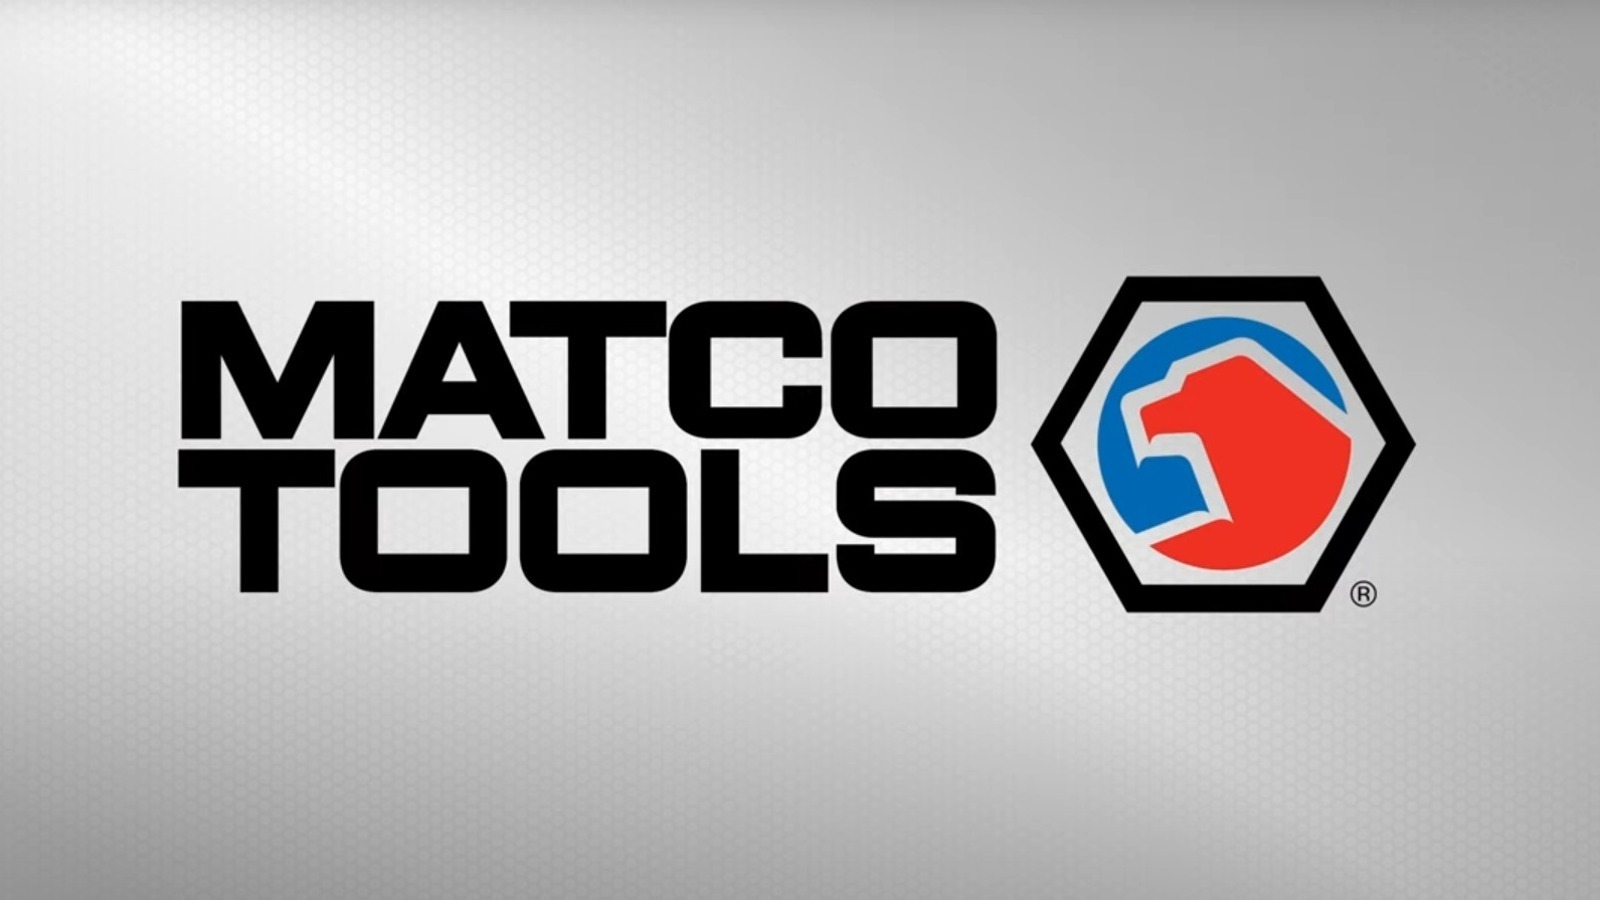 Quién fabrica las herramientas Matco (y qué debe saber antes de comprarlas)